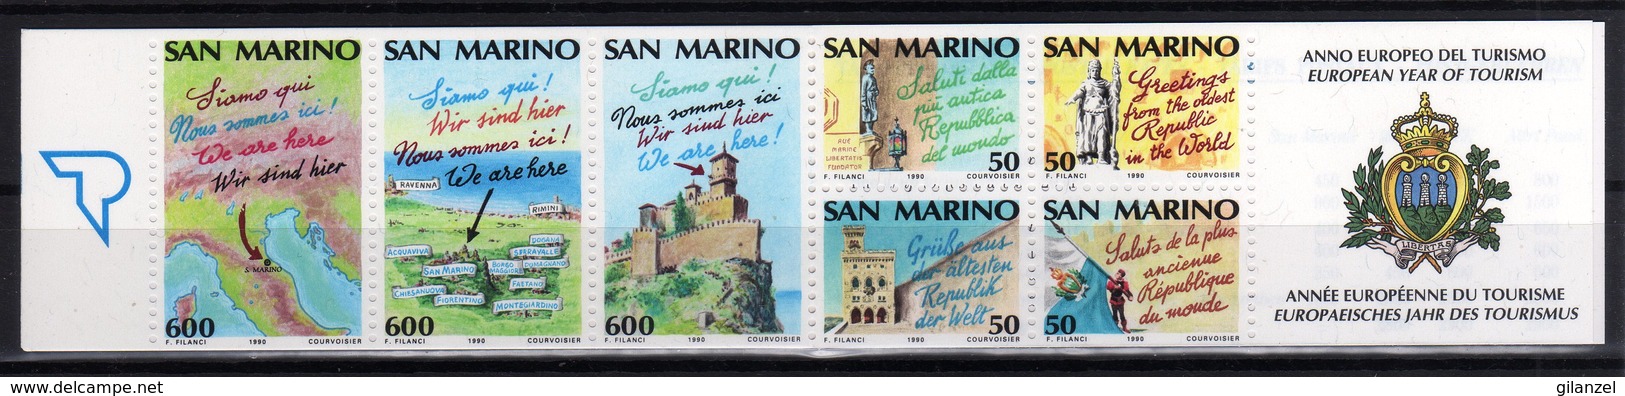 San Marino 1990 Libretto MNH Anno Europeo Del Turismo European Year Of Tourism - Idee Europee